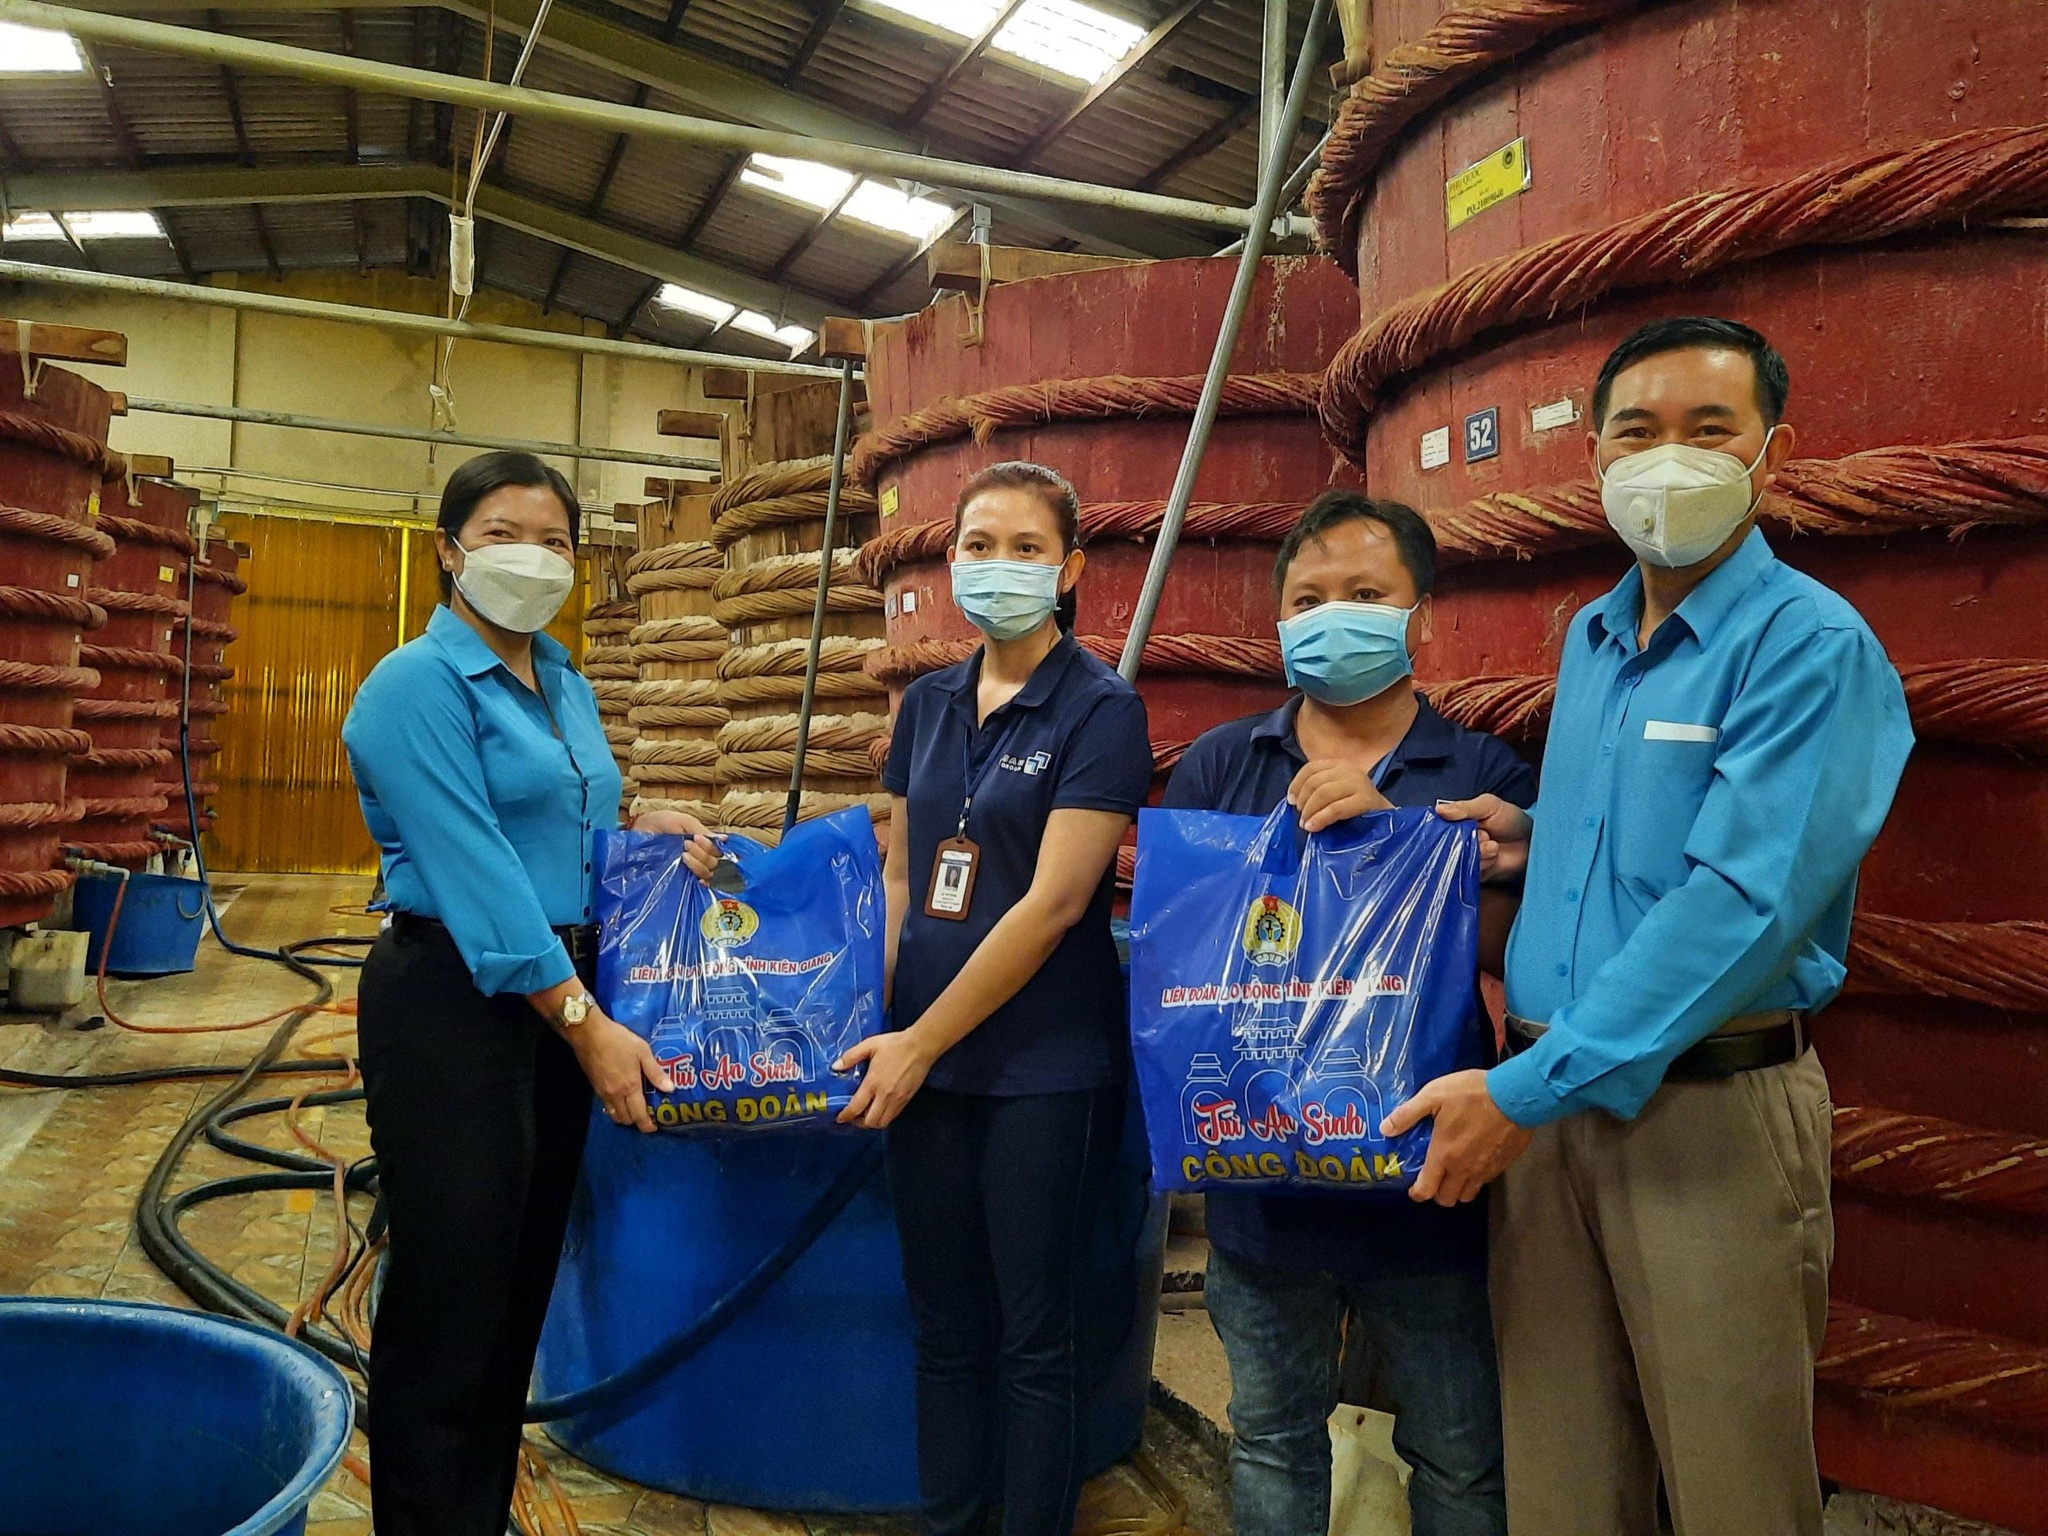 Kiên Giang: Trao hơn 10.000 túi an sinh cho công đoàn viên, người lao động Phú Quốc - ảnh 1  - cong-nhan-6420 - Kiên Giang: Trao hơn 10.000 túi an sinh cho công đoàn viên, người lao động Phú Quốc